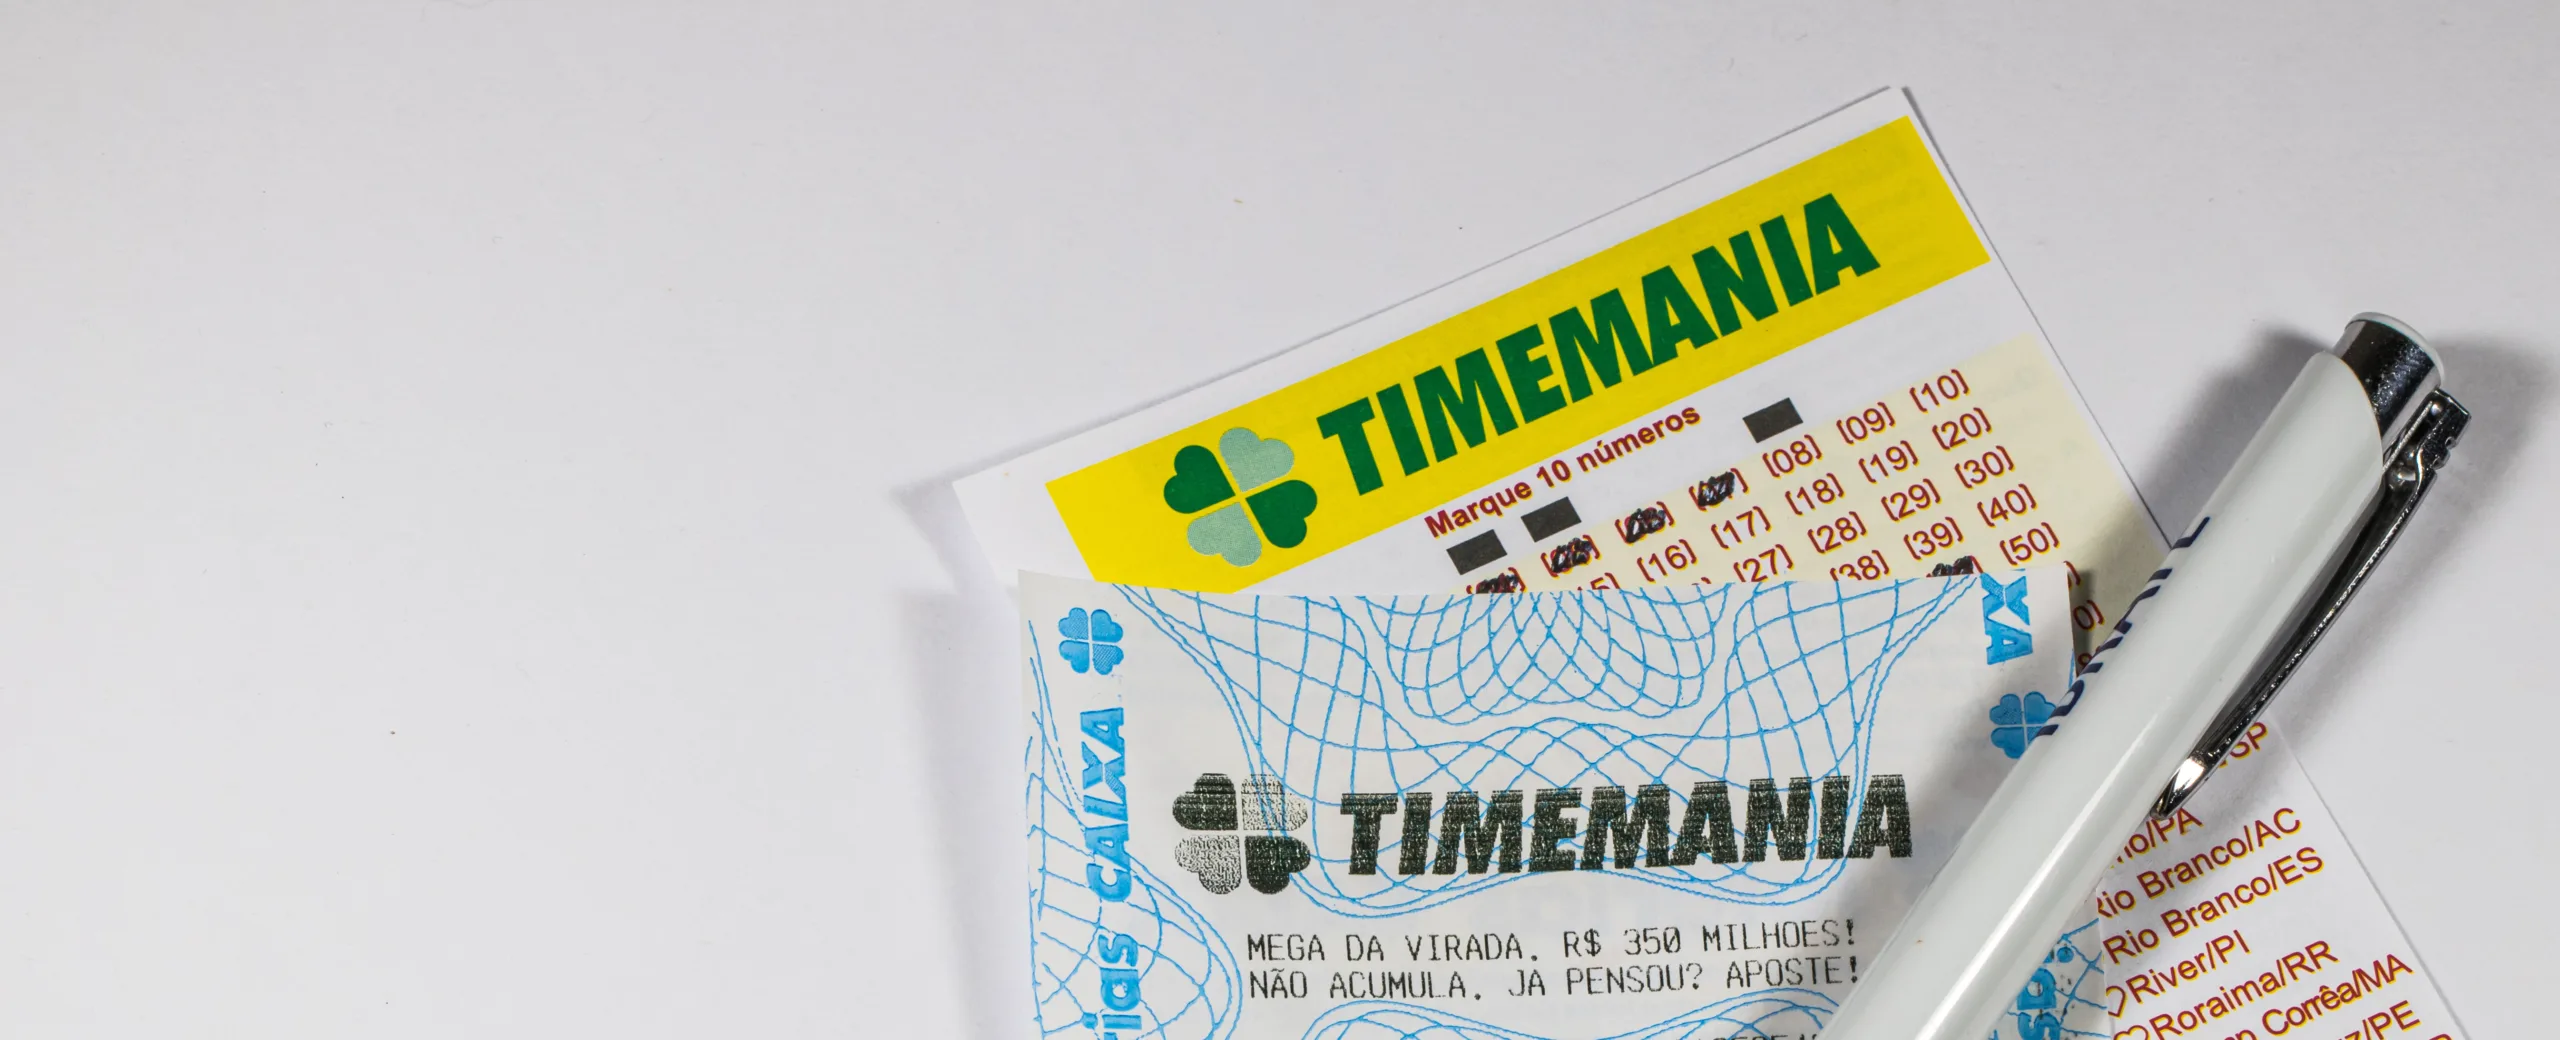 Timemania 2098: confira o resultado do sorteio dos R$ 3 milhões